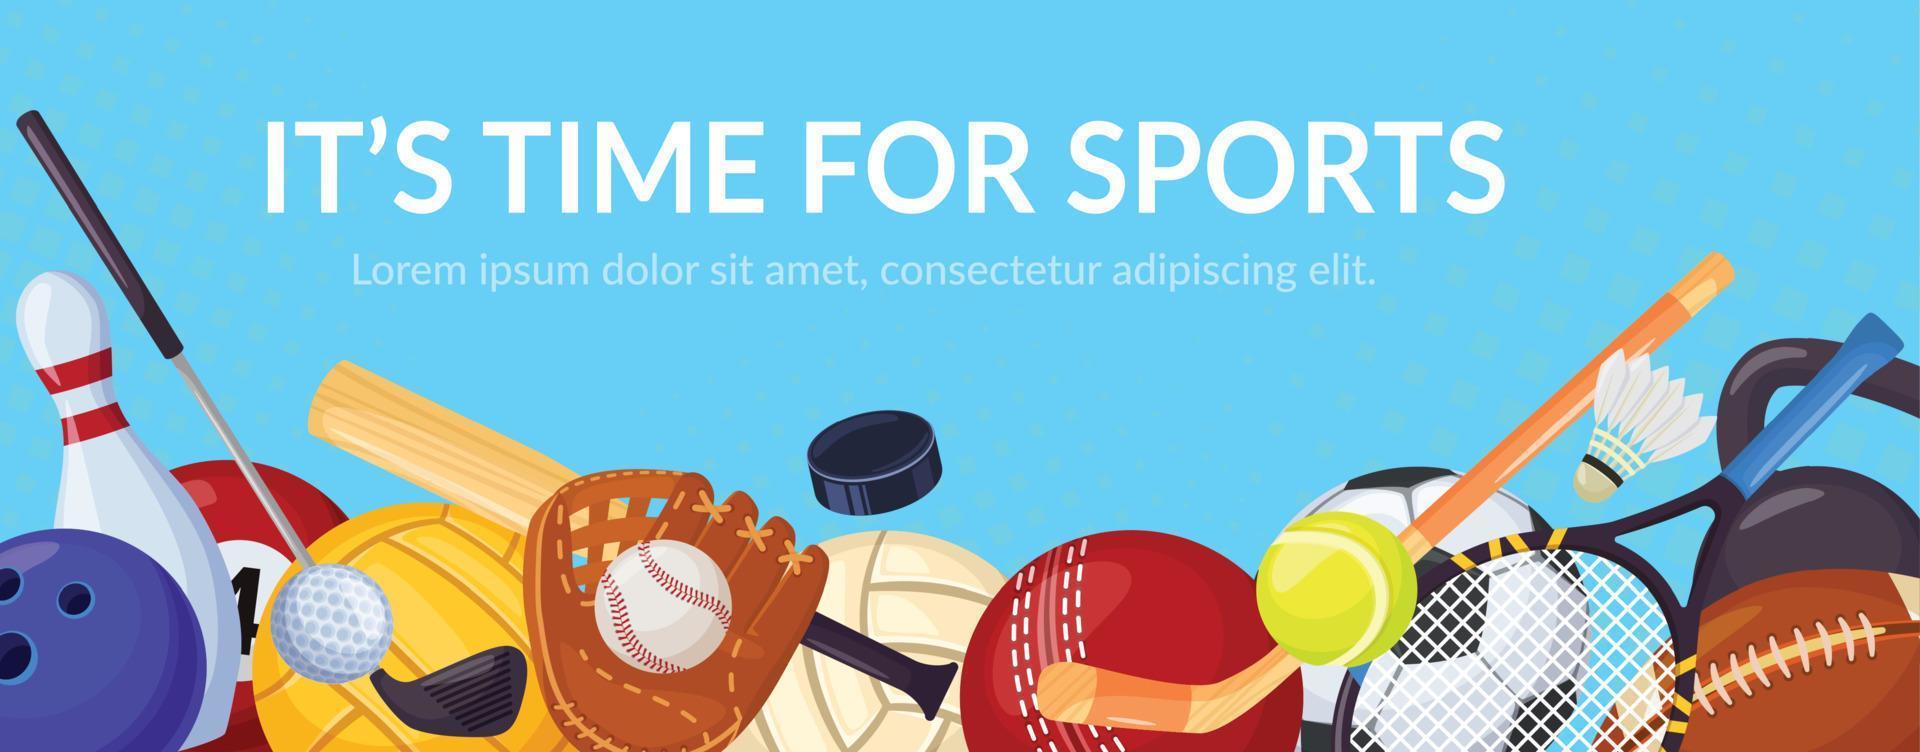 deporte juegos bandera con Deportes equipo. tenis, vóleibol, fútbol. dibujos animados pelota juegos deportivo actividad, sano estilo de vida vector antecedentes